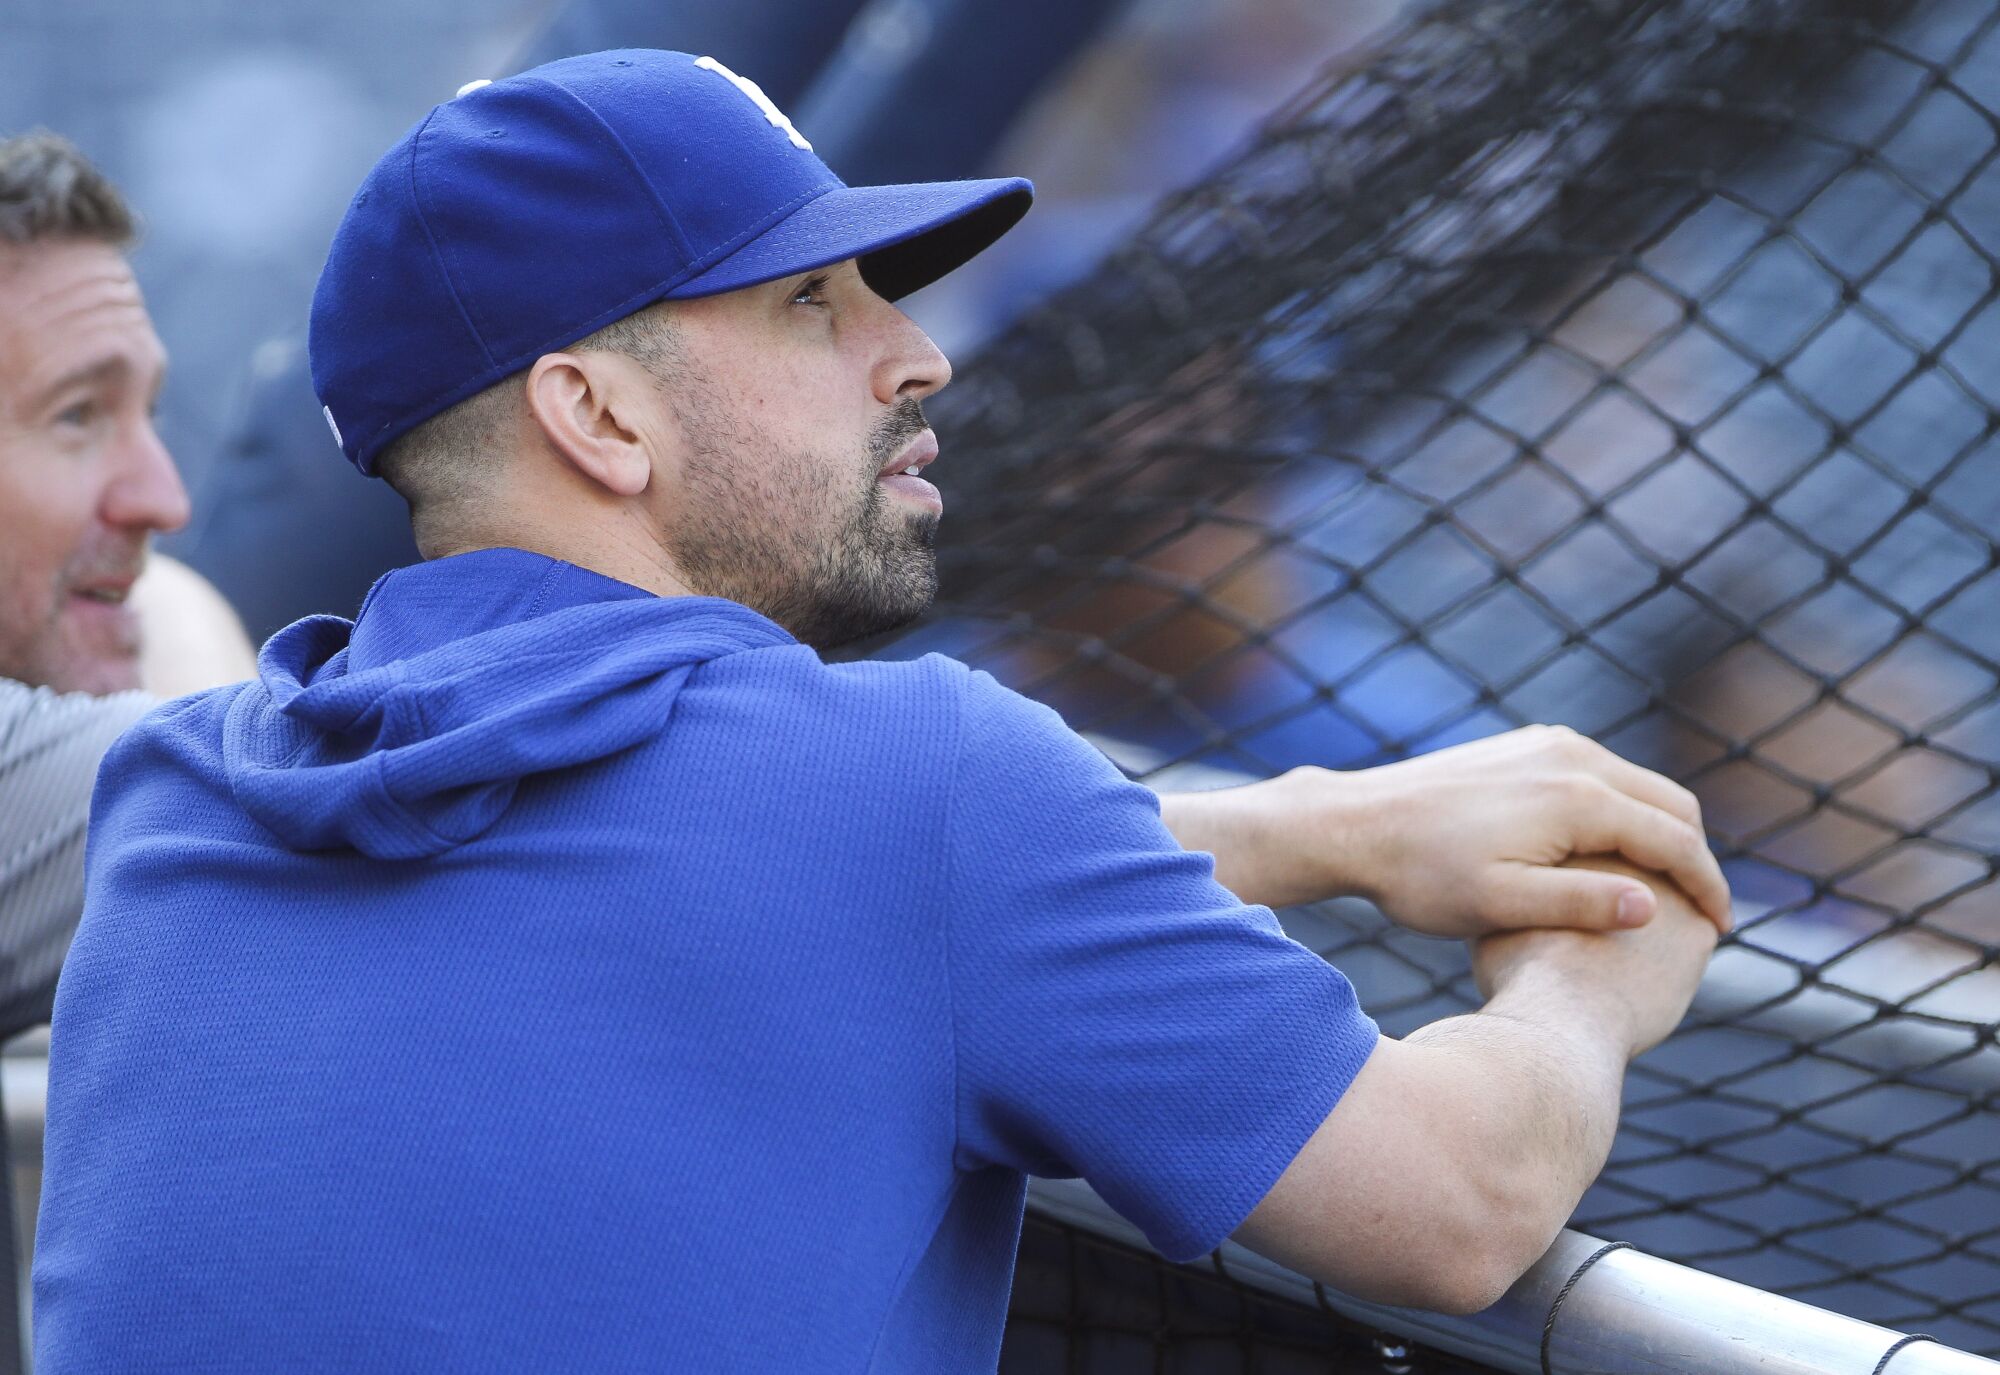 Dodgers hitting coach Robert Van Scoyoc watches batting practice in 2019.